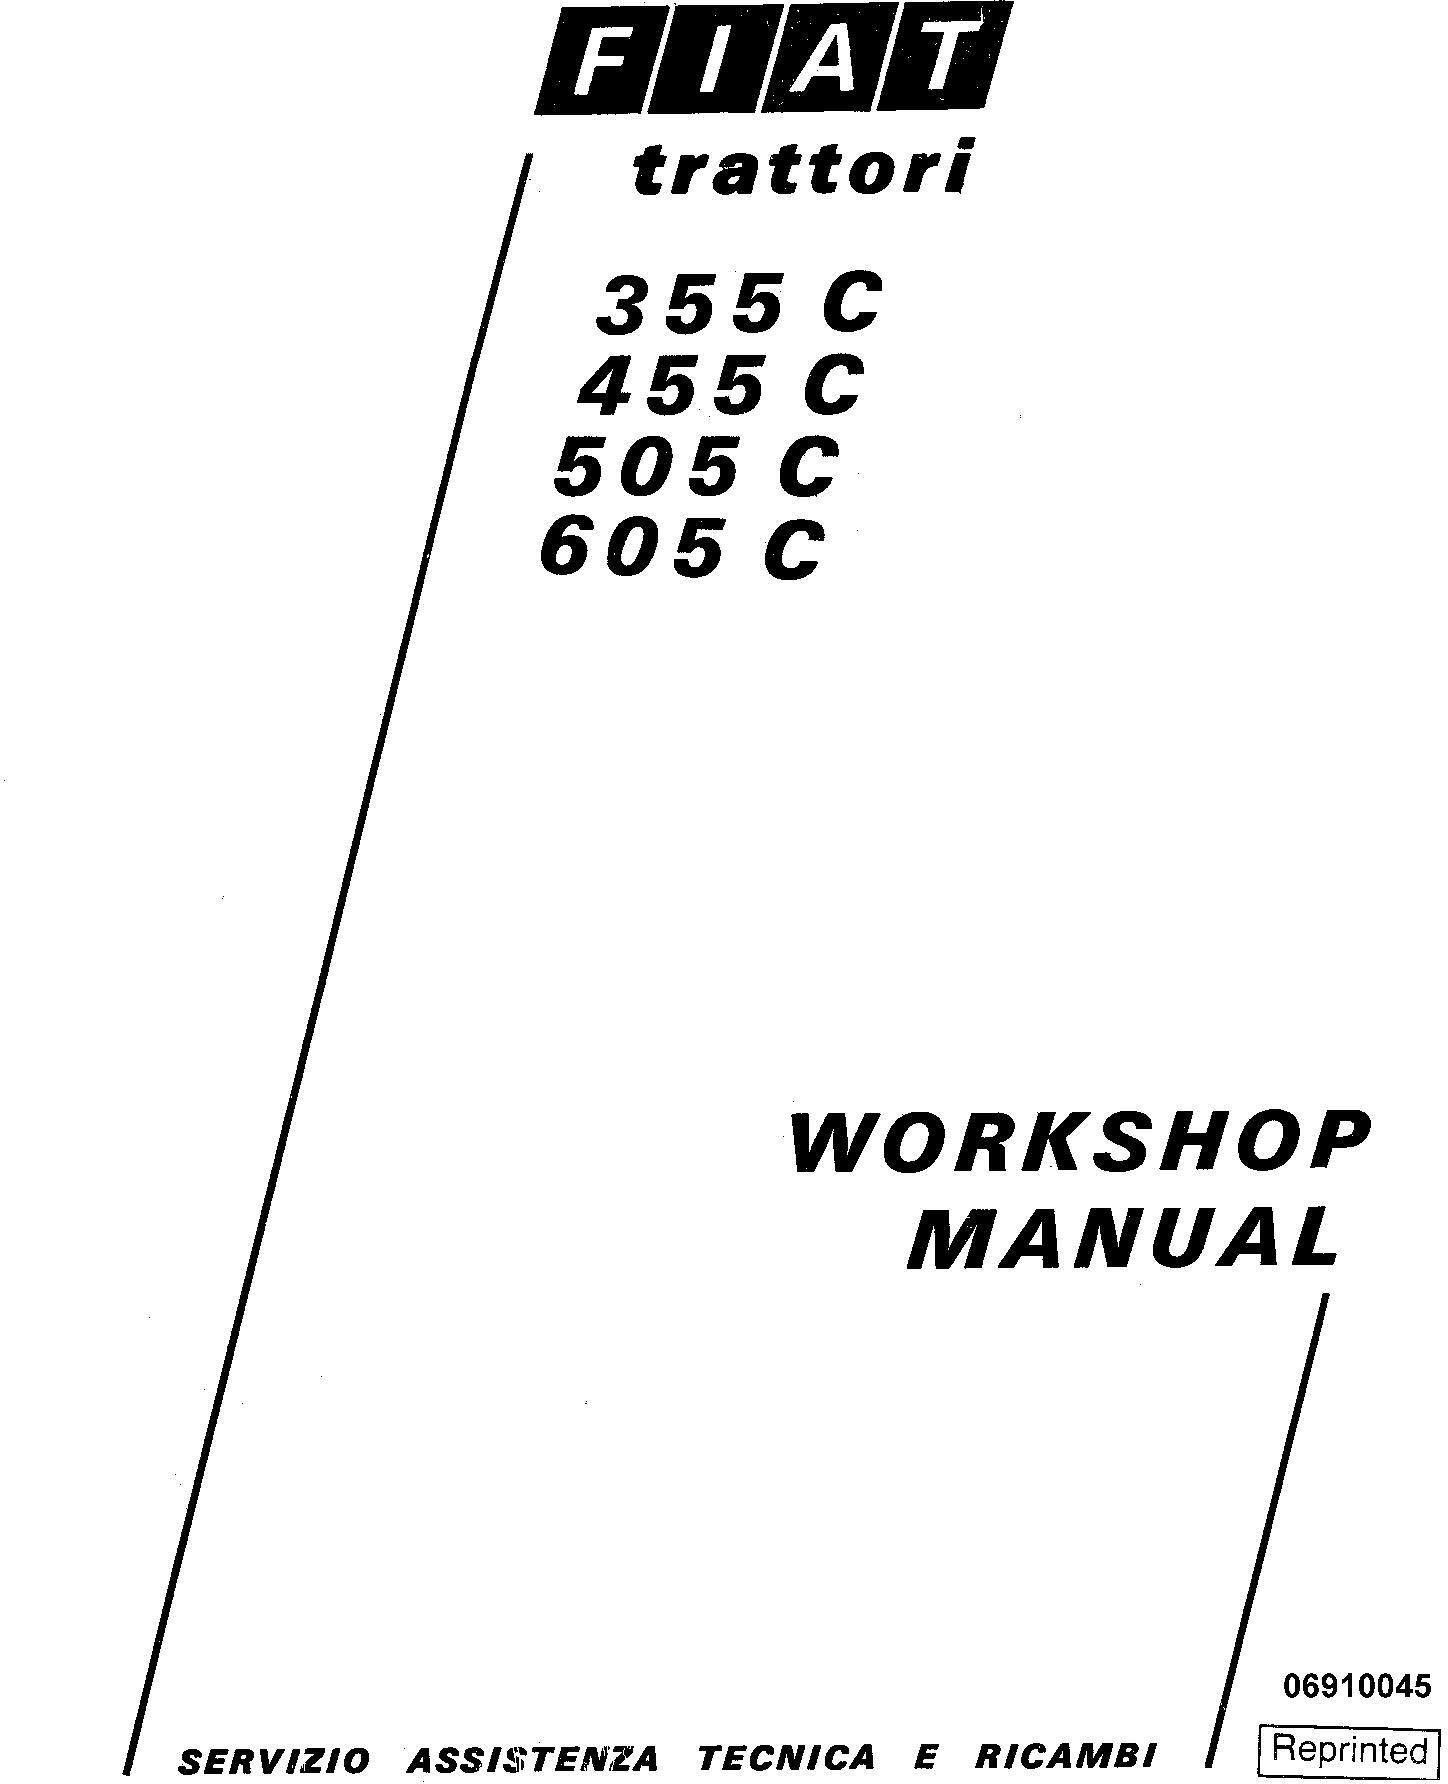 Fiat 355C, 455C, 505C, 605C Crawler Tractor Workshop Service Manual (6035416200) - 19912